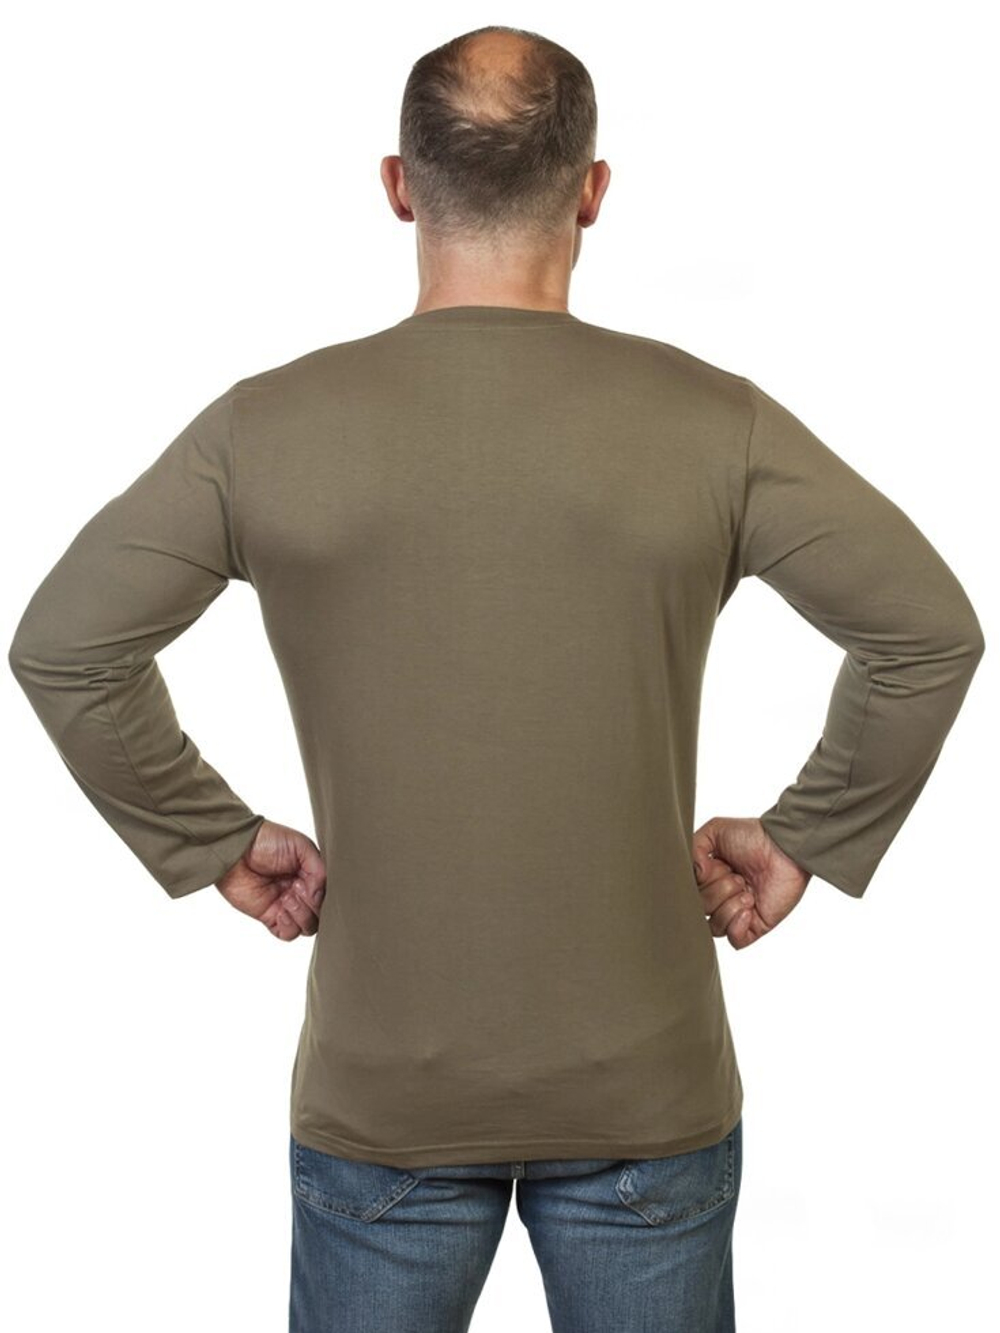 Мужская футболка хаки-олива с длинным рукавом RUS 58 (3XL)